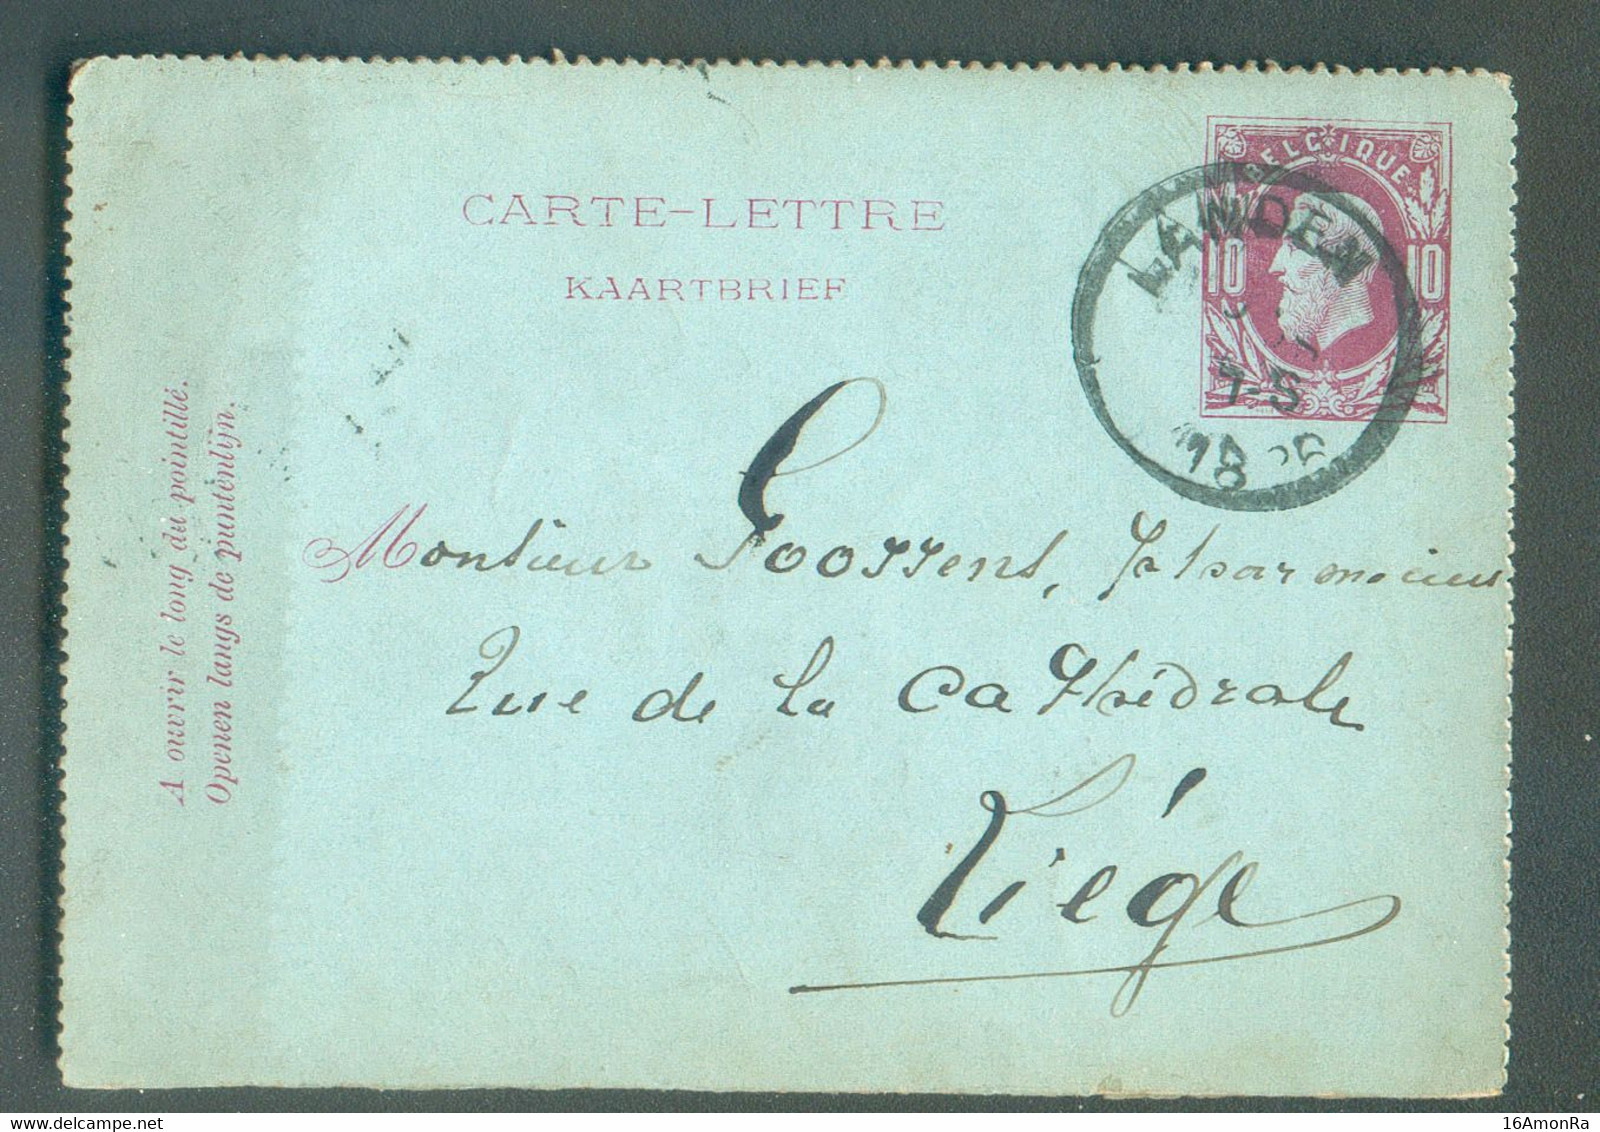 E.P. Carte-lettre 10c. Obl. Sc LANDEN 11 Avril 1886 vers Pharmacien à Liège  - 19247 - Cartes-lettres